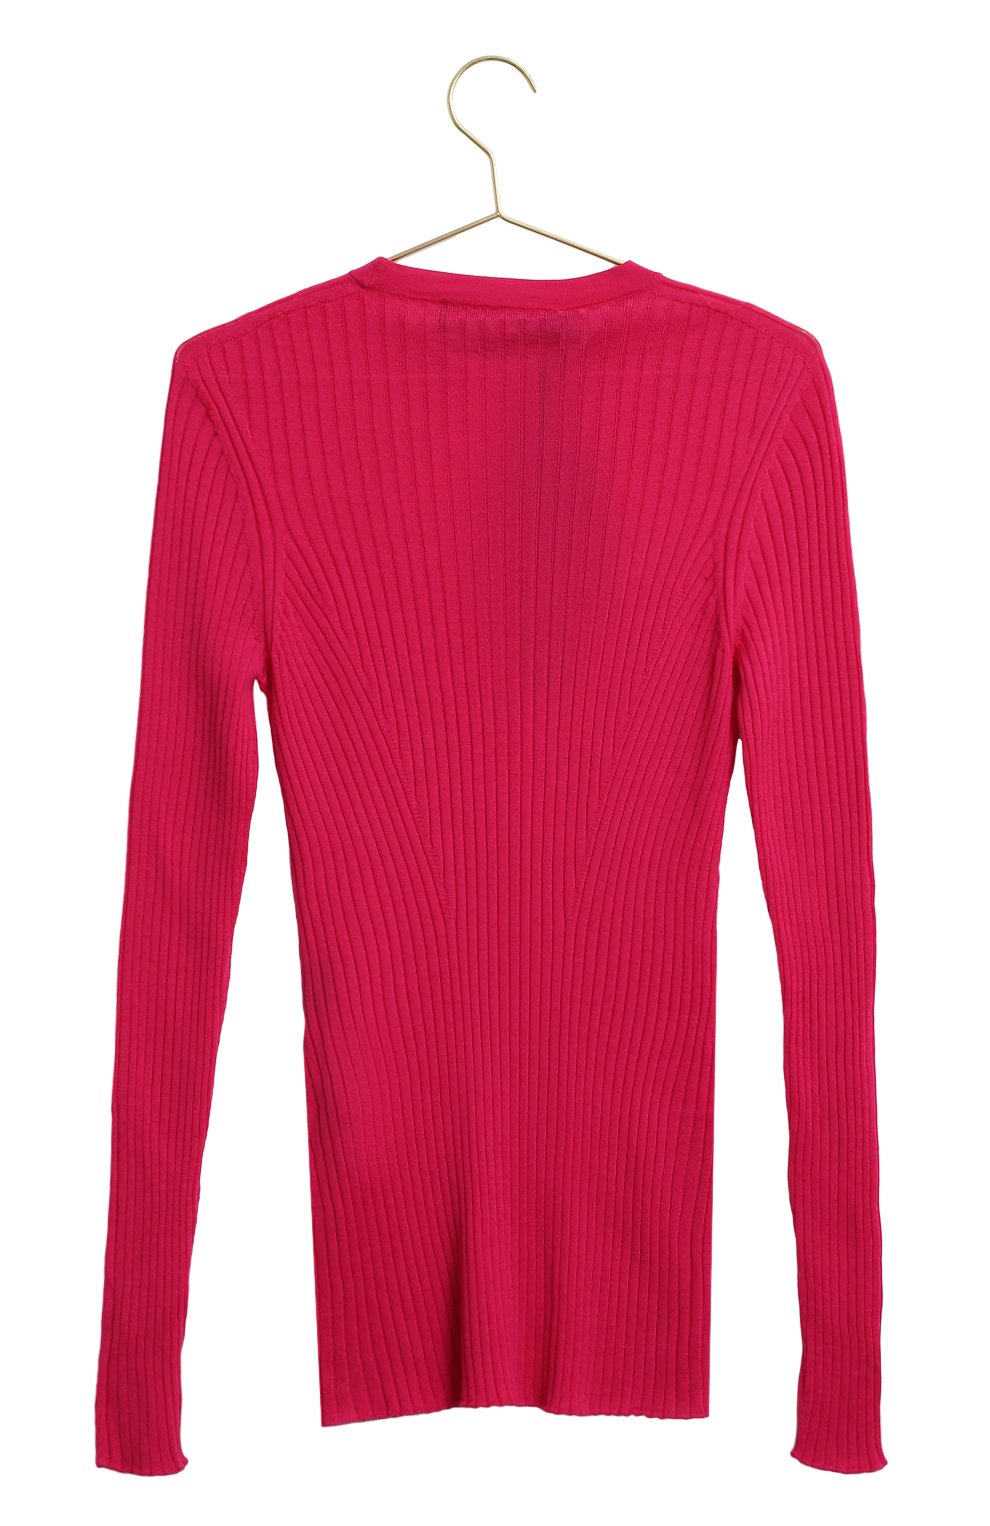 Шерстяной пуловер | Versace | Розовый - 2